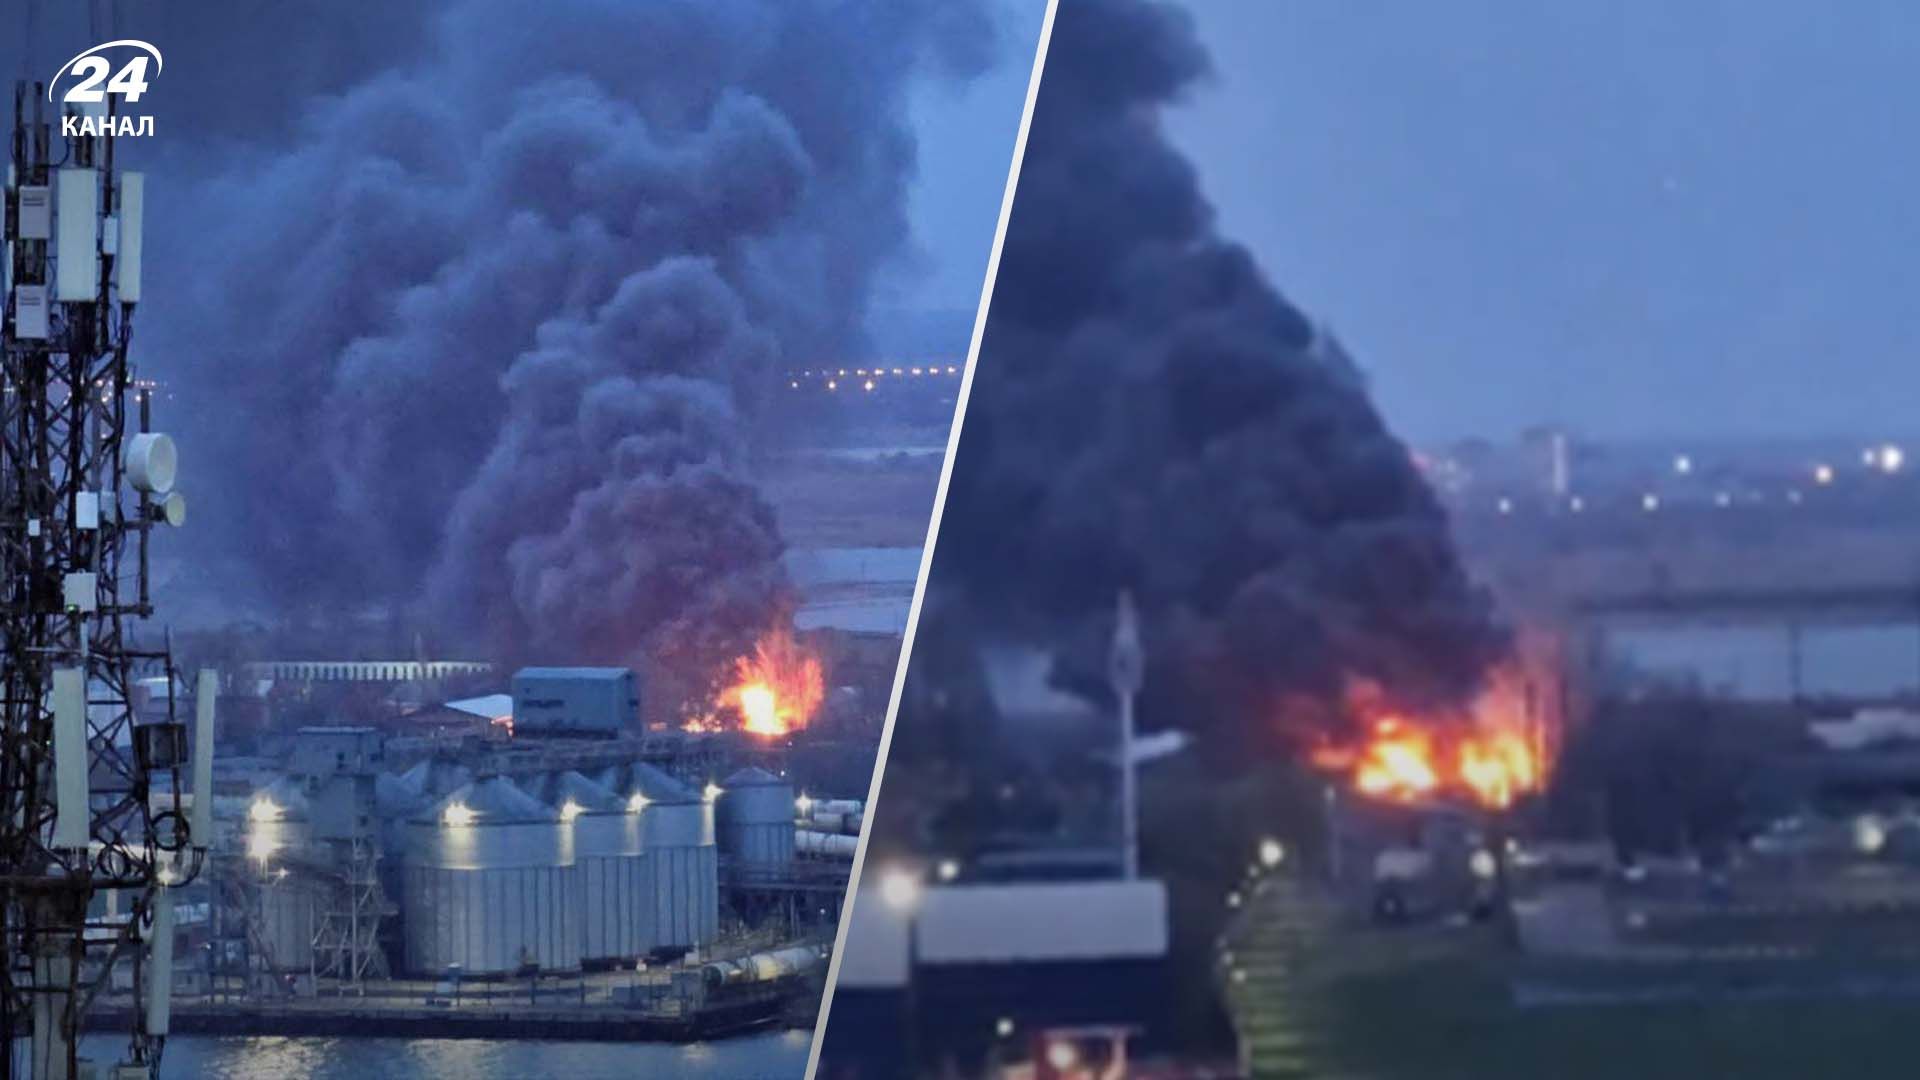 В Ростове взрывы: горит склад с горючим на территории зернового терминала - 24 Канал